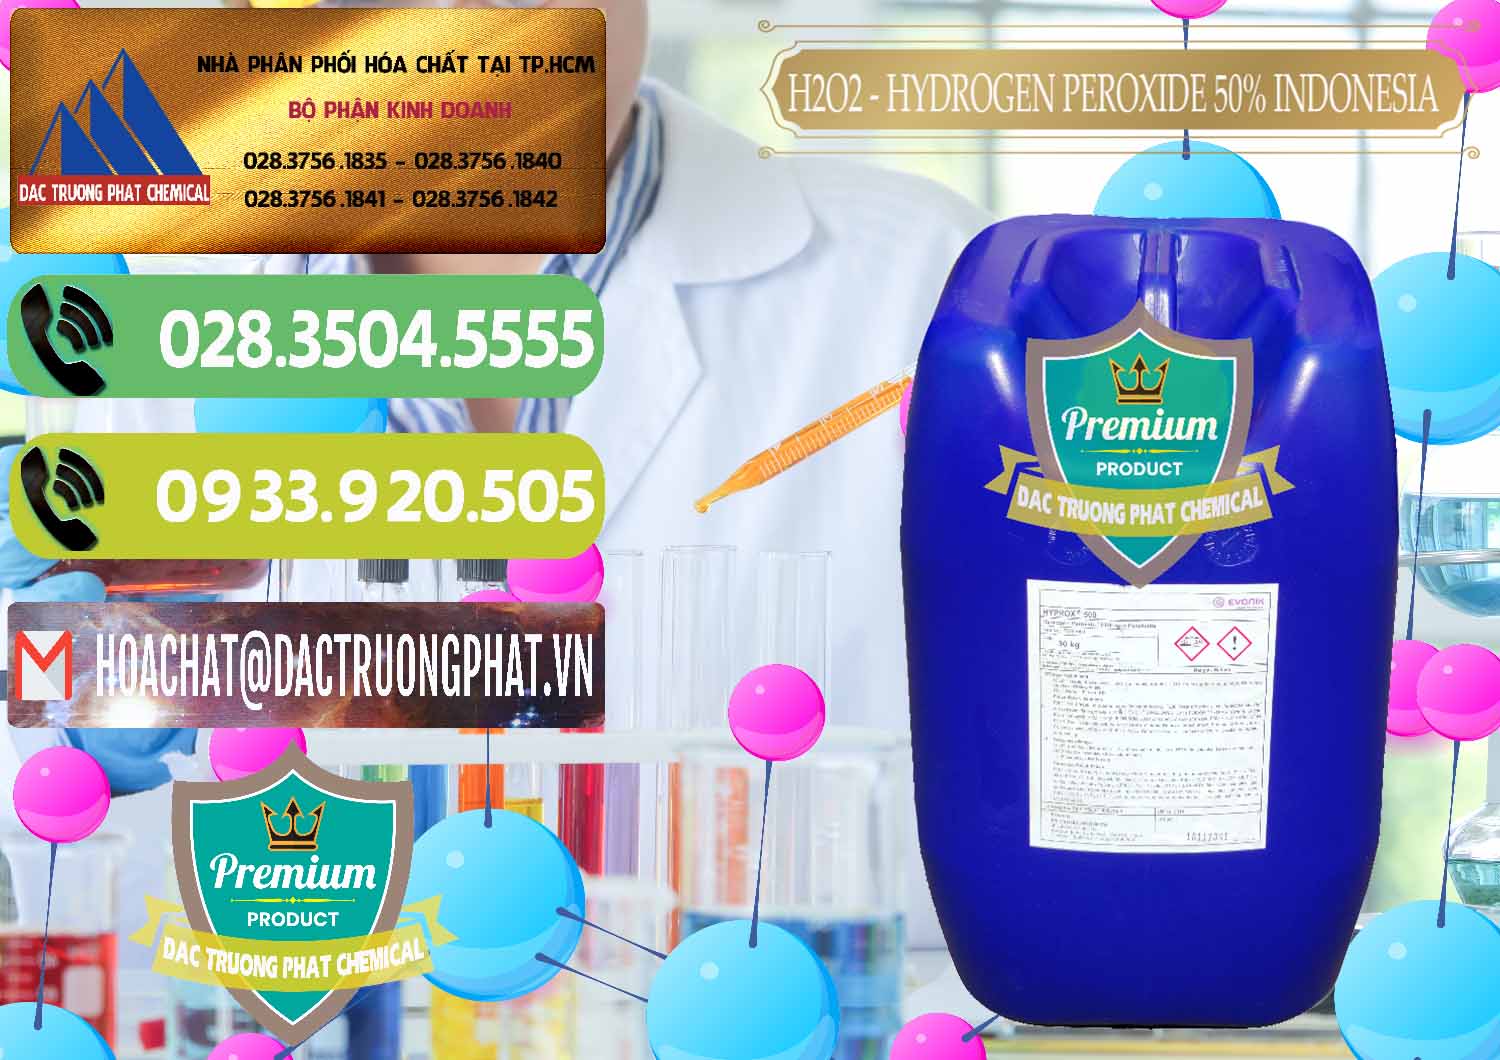 Cty chuyên bán và cung cấp H2O2 - Hydrogen Peroxide 50% Evonik Indonesia - 0070 - Công ty chuyên kinh doanh _ phân phối hóa chất tại TP.HCM - hoachatmientay.vn